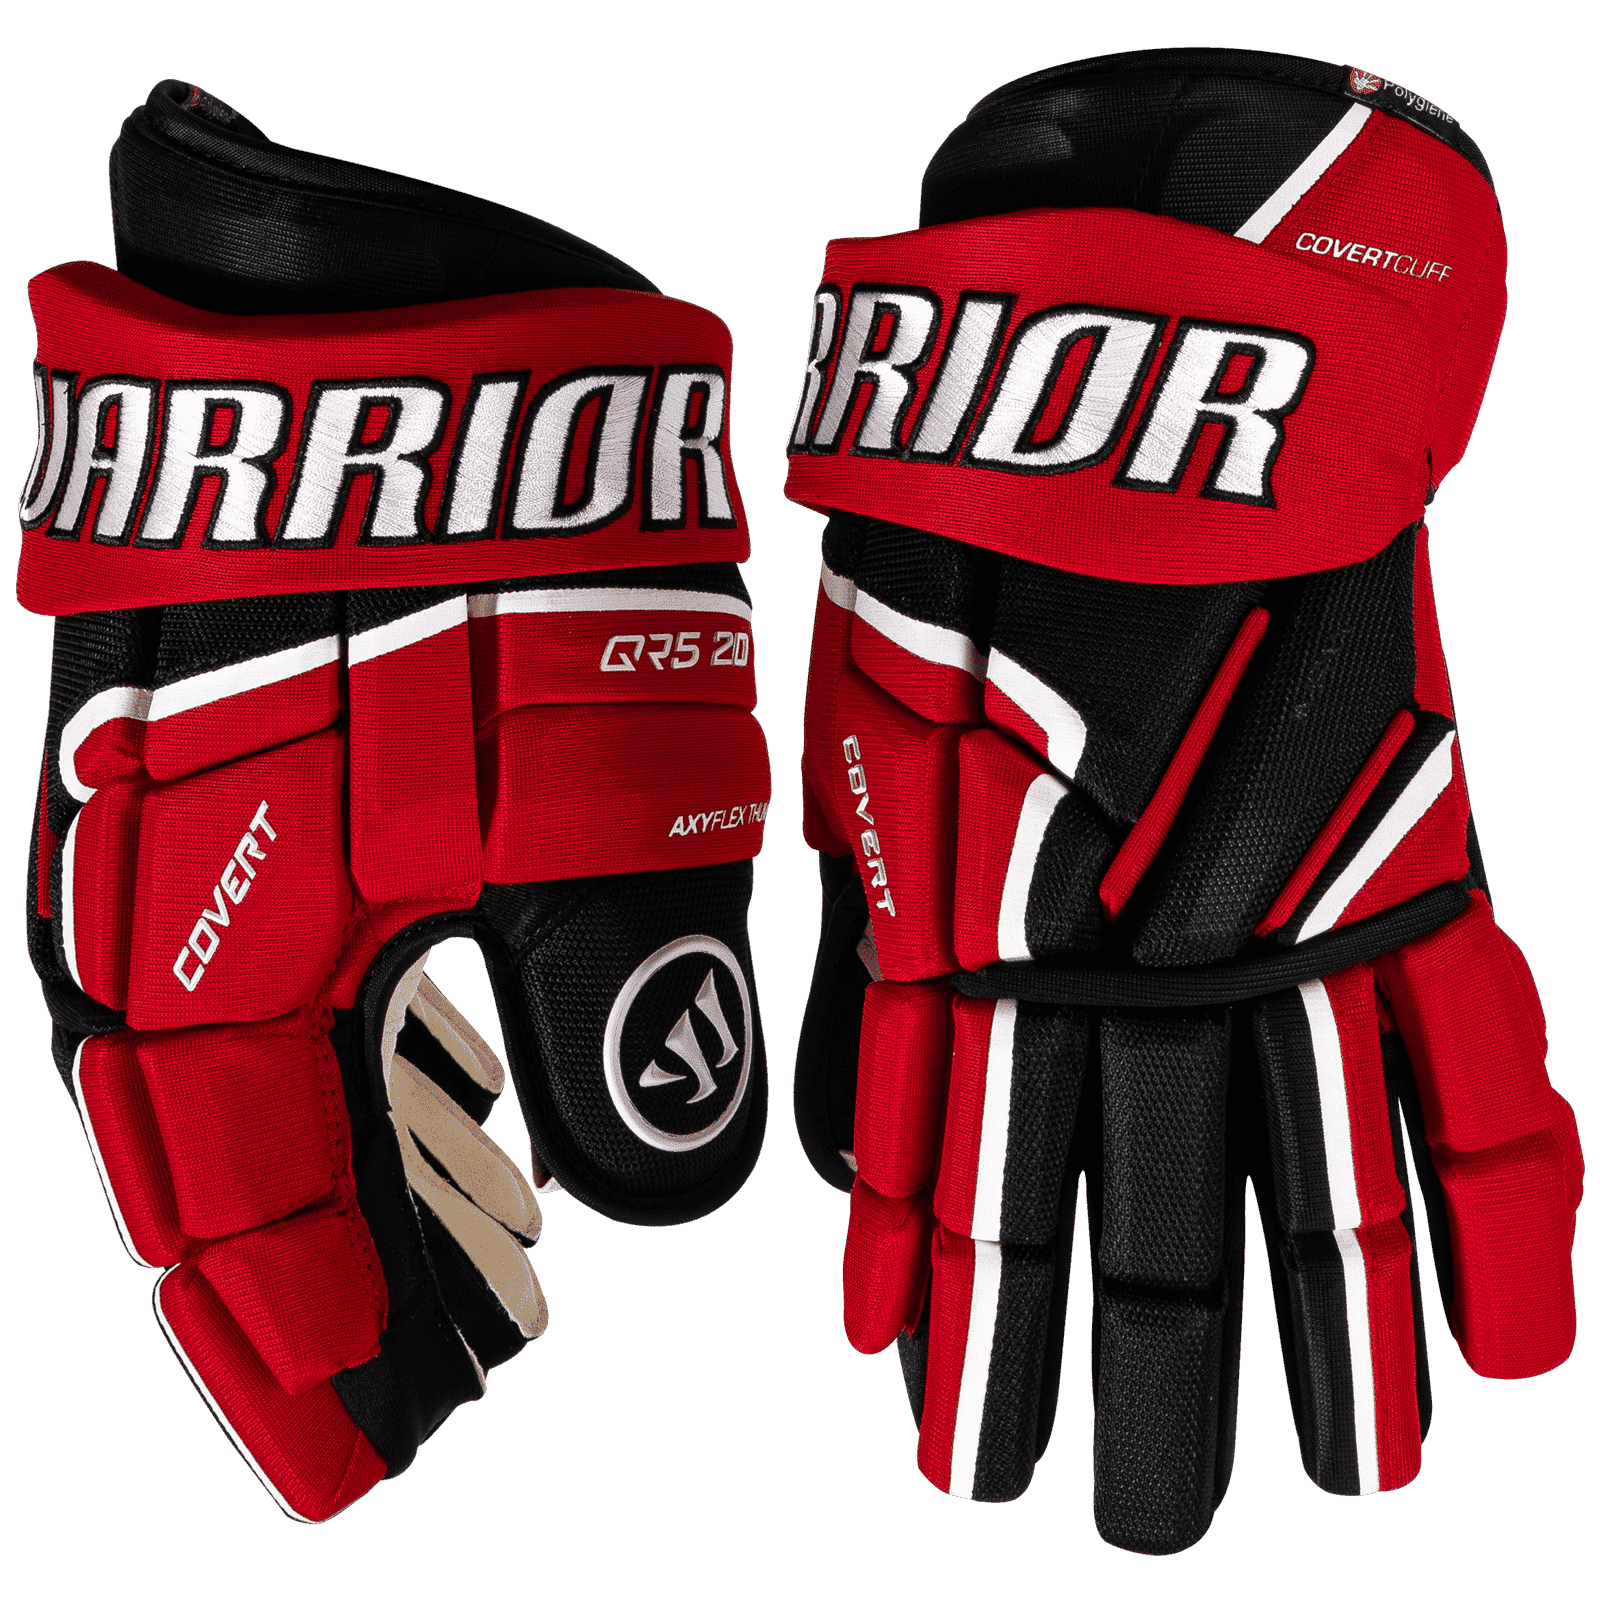 Handschuhe Warrior Covert QR5 20 SR 